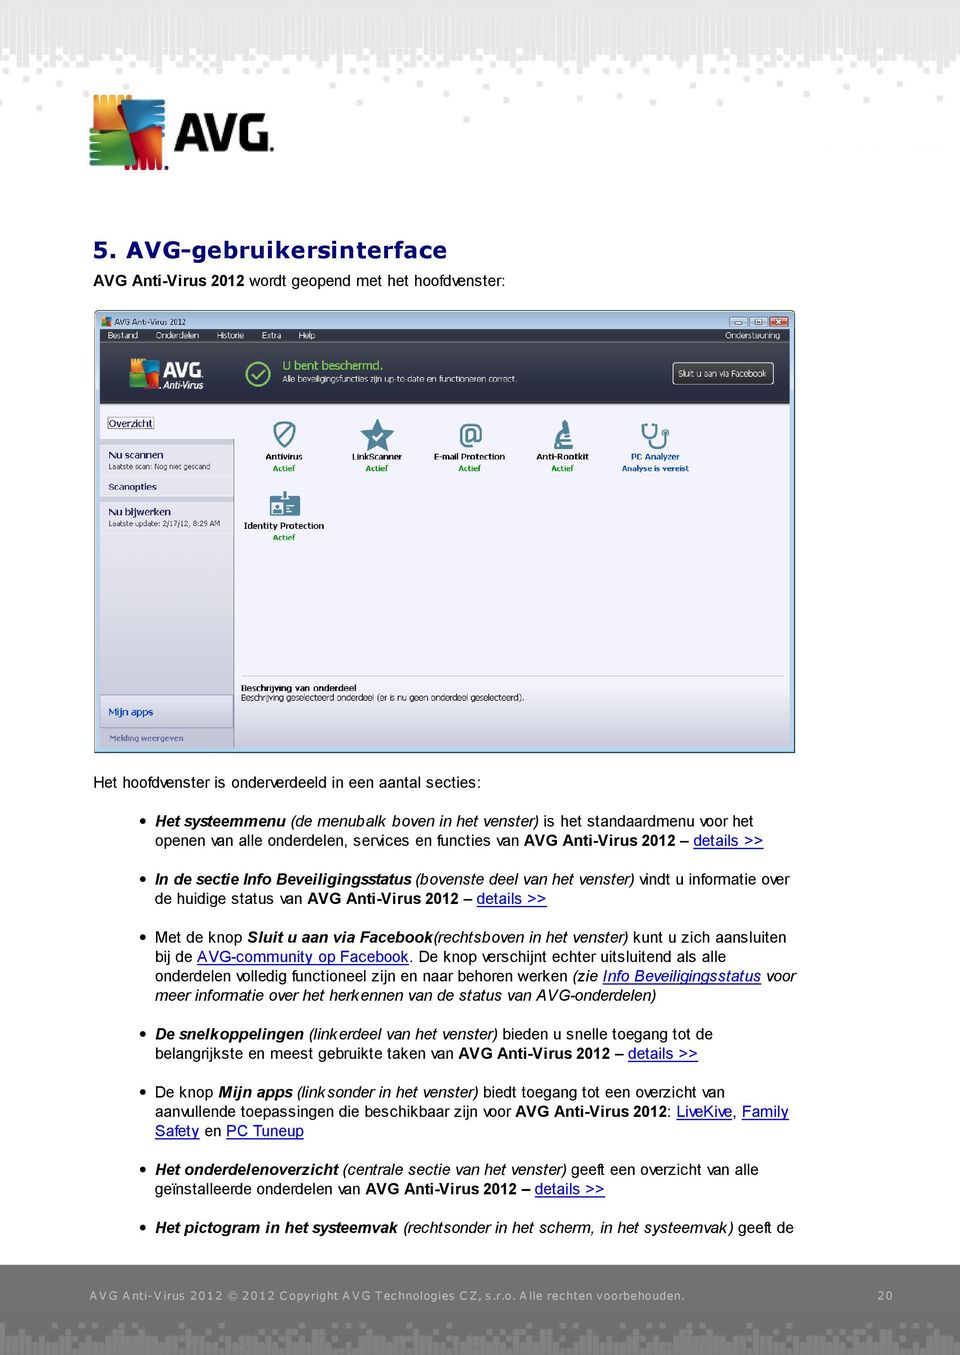 de huidige status van AVG Anti-Virus 2012 details >> Met de knop Sluit u aan via Facebook(rechtsboven in het venster) kunt u zich aansluiten bij de AVG-community op Facebook.